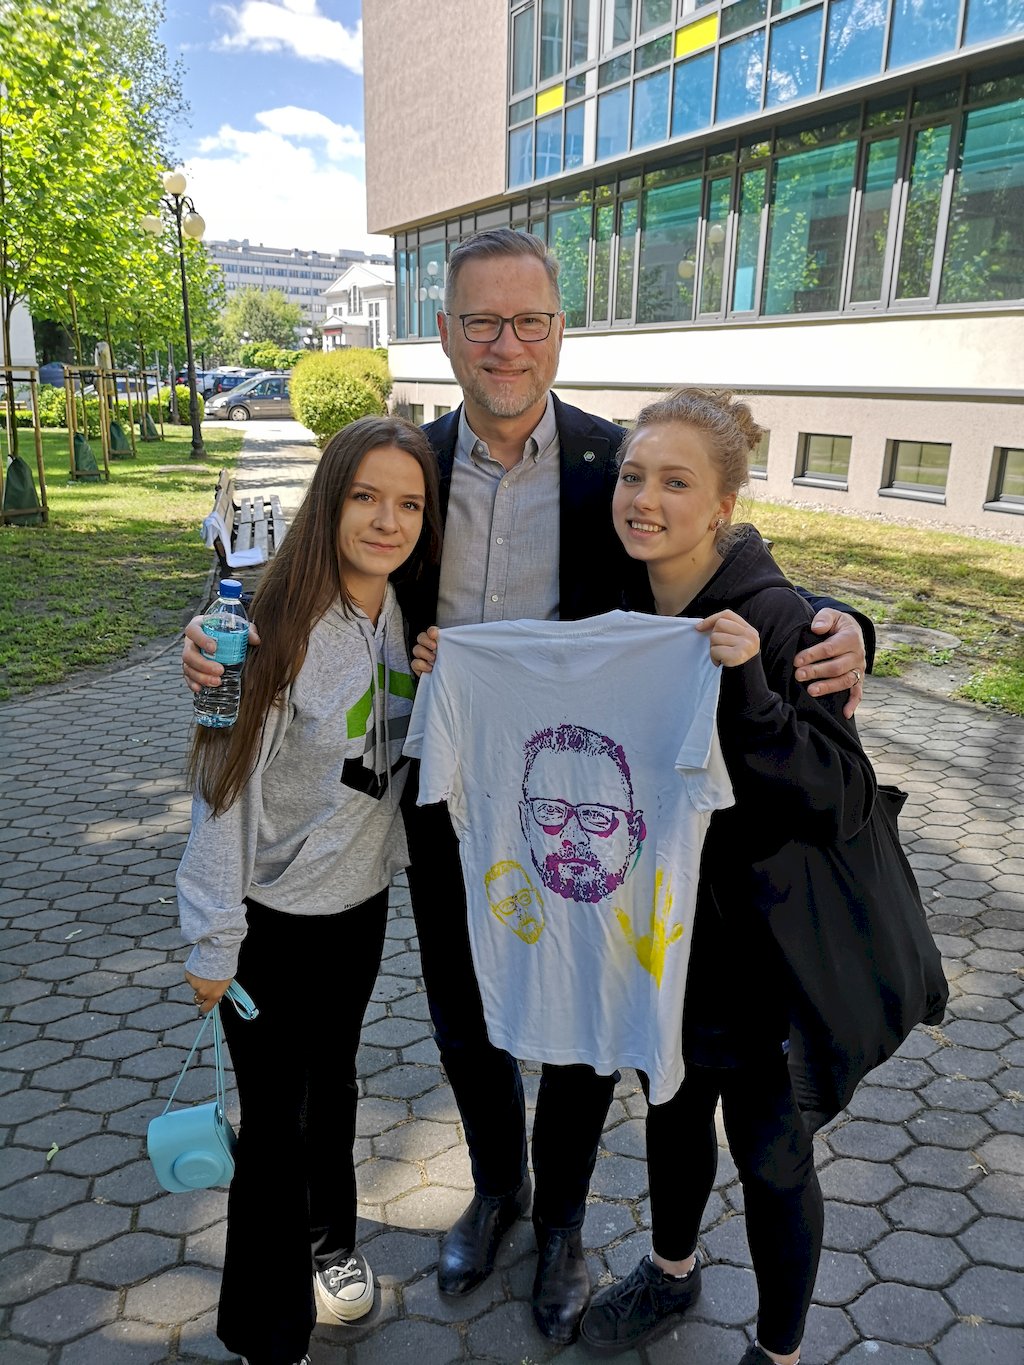 Dziekan prof. Marek Cała stoi pomiędzy dwoma studentkami trzymającymi rozłożoną białą koszulkę z namalowaną twarzą brodatego mężczyzny w okularach.